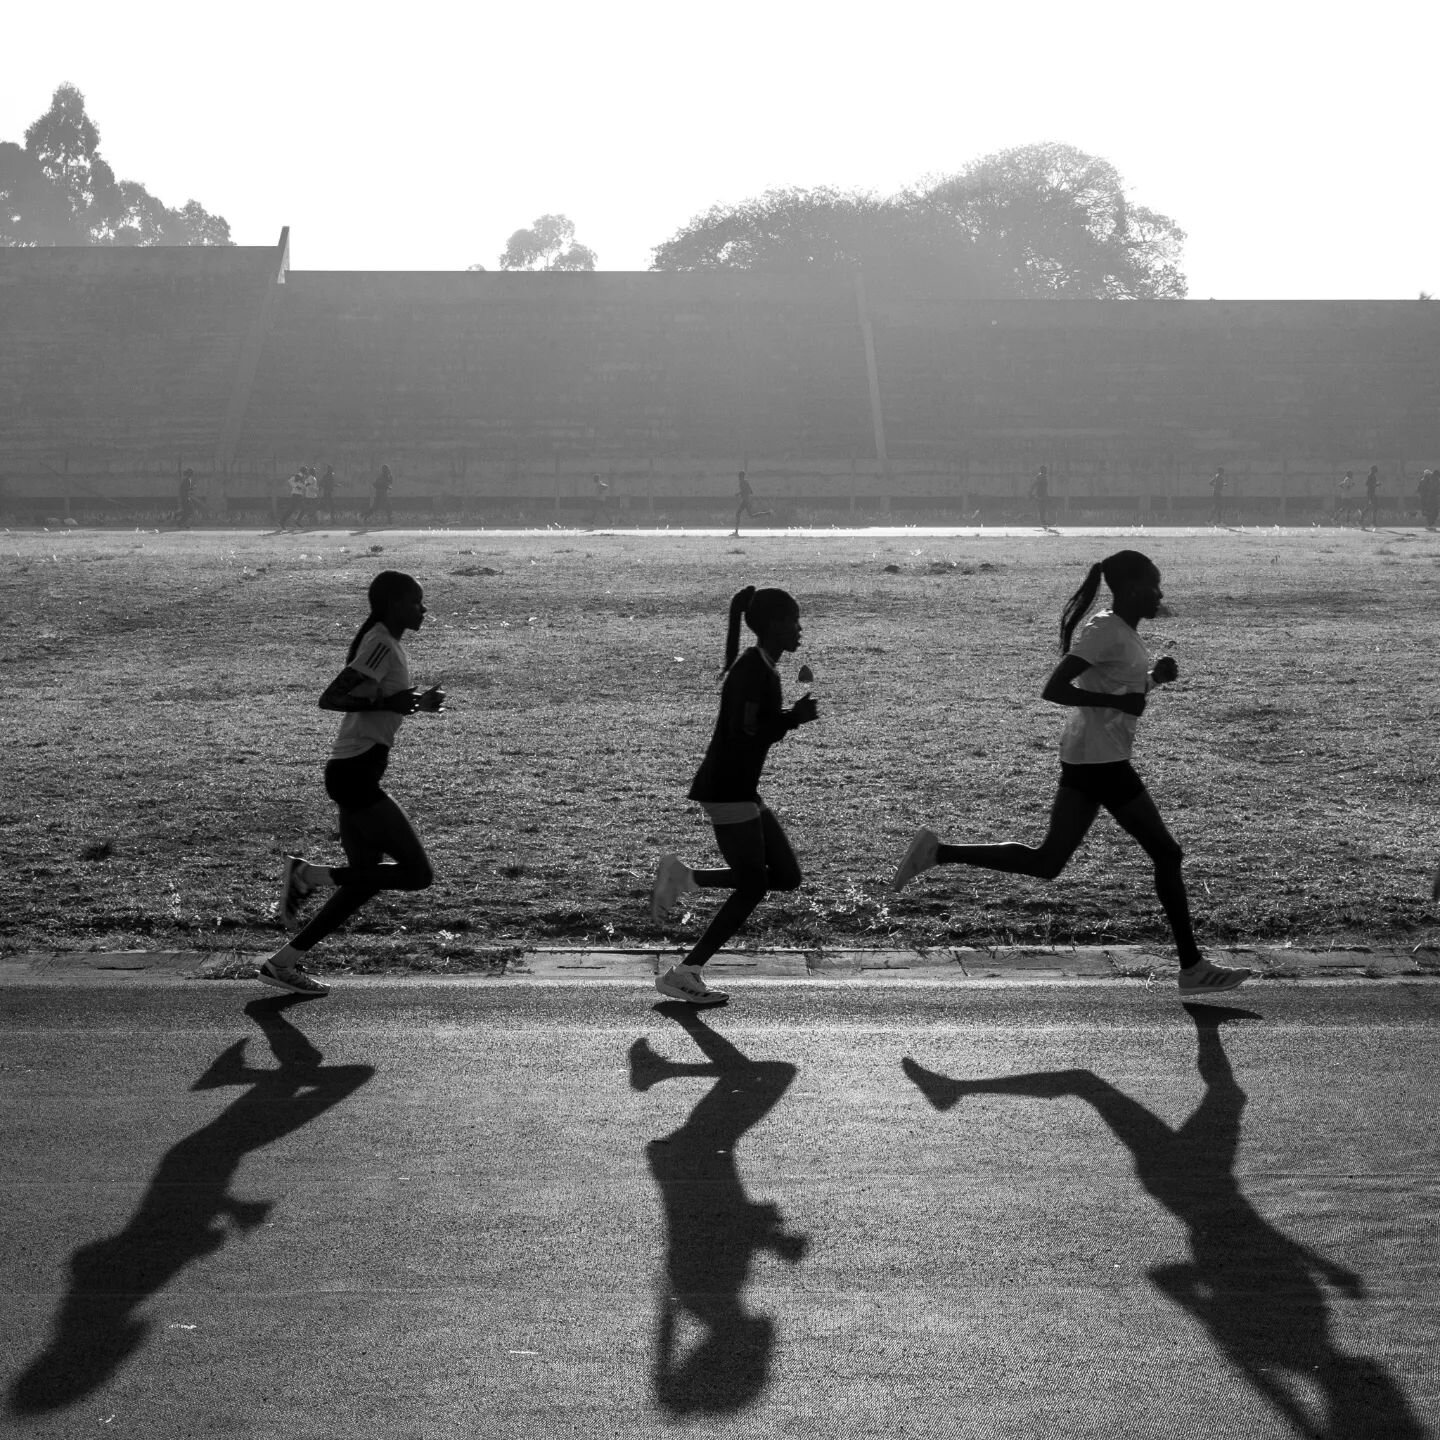 Chasing runners in the North Rift.
.
.
.
.
.
.
#iten
#kenya
#running 
#runners
#journalism
#documentary